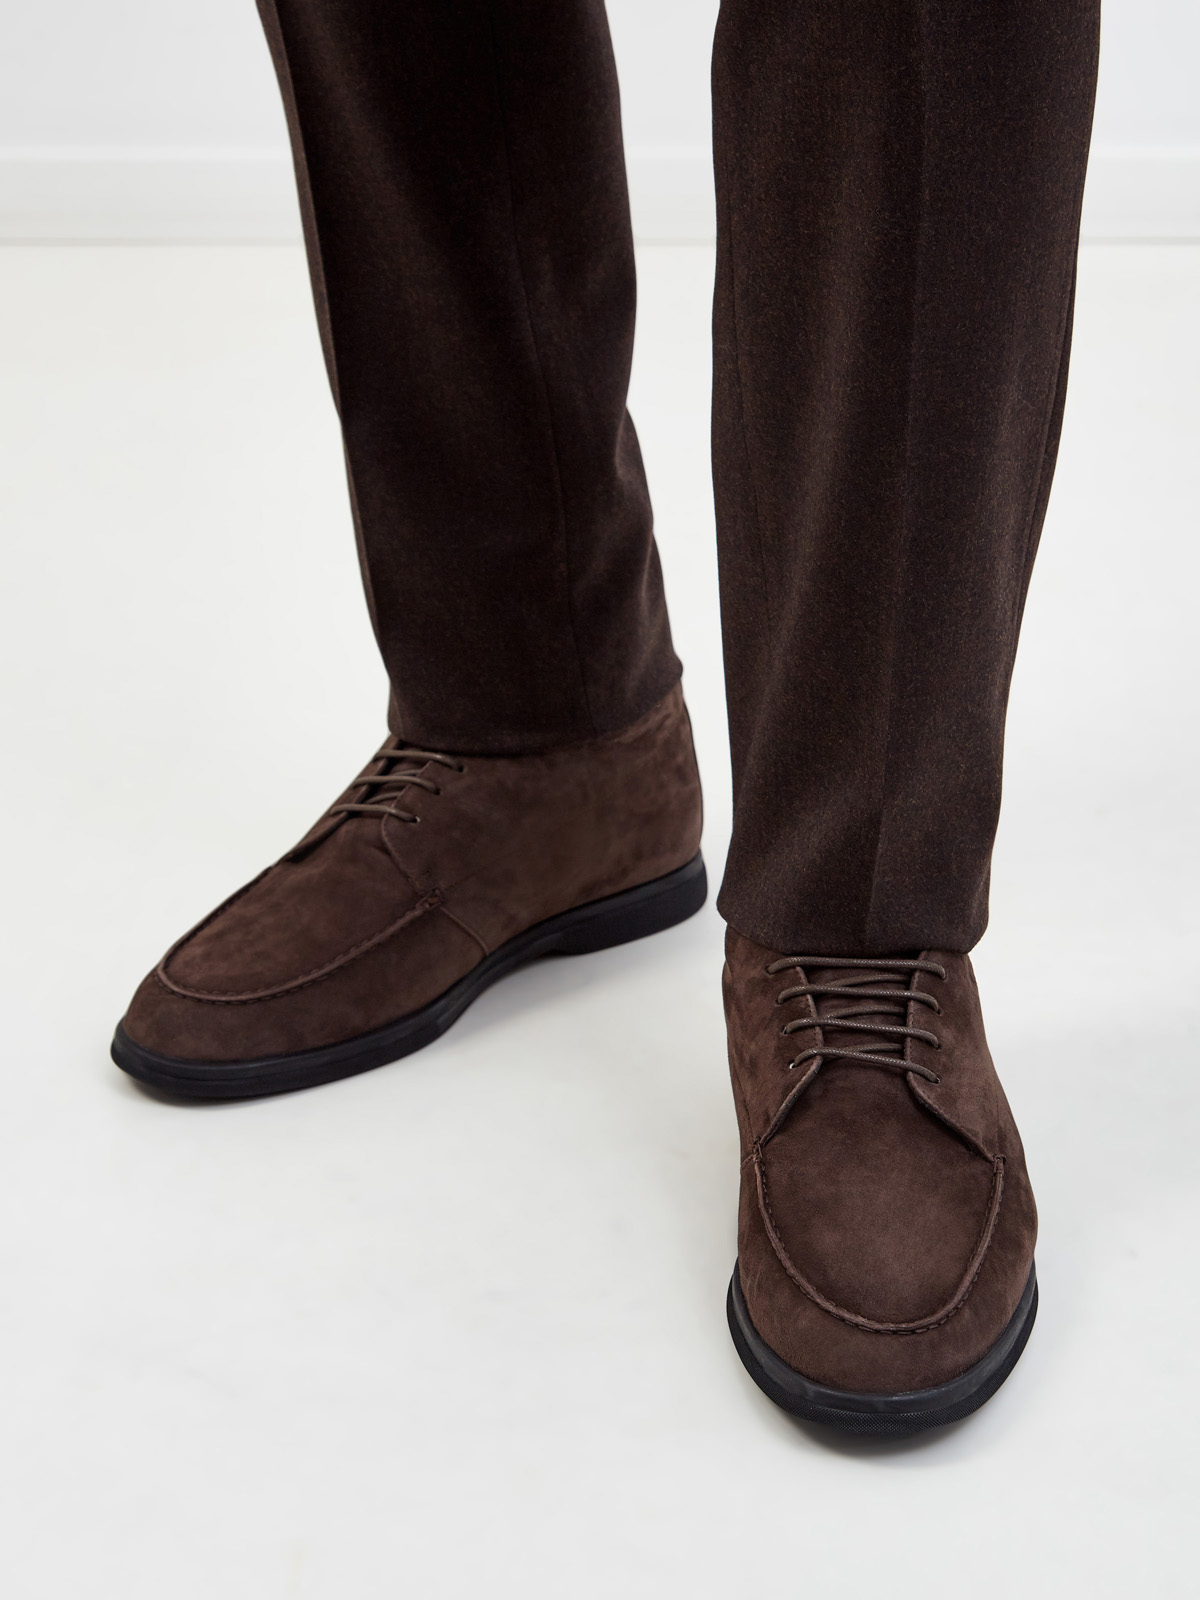 Замшевые ботинки-дерби на подкладке из овчины CANALI, цвет коричневый, размер 41;41.5;42;42.5;43;43.5;44 - фото 2